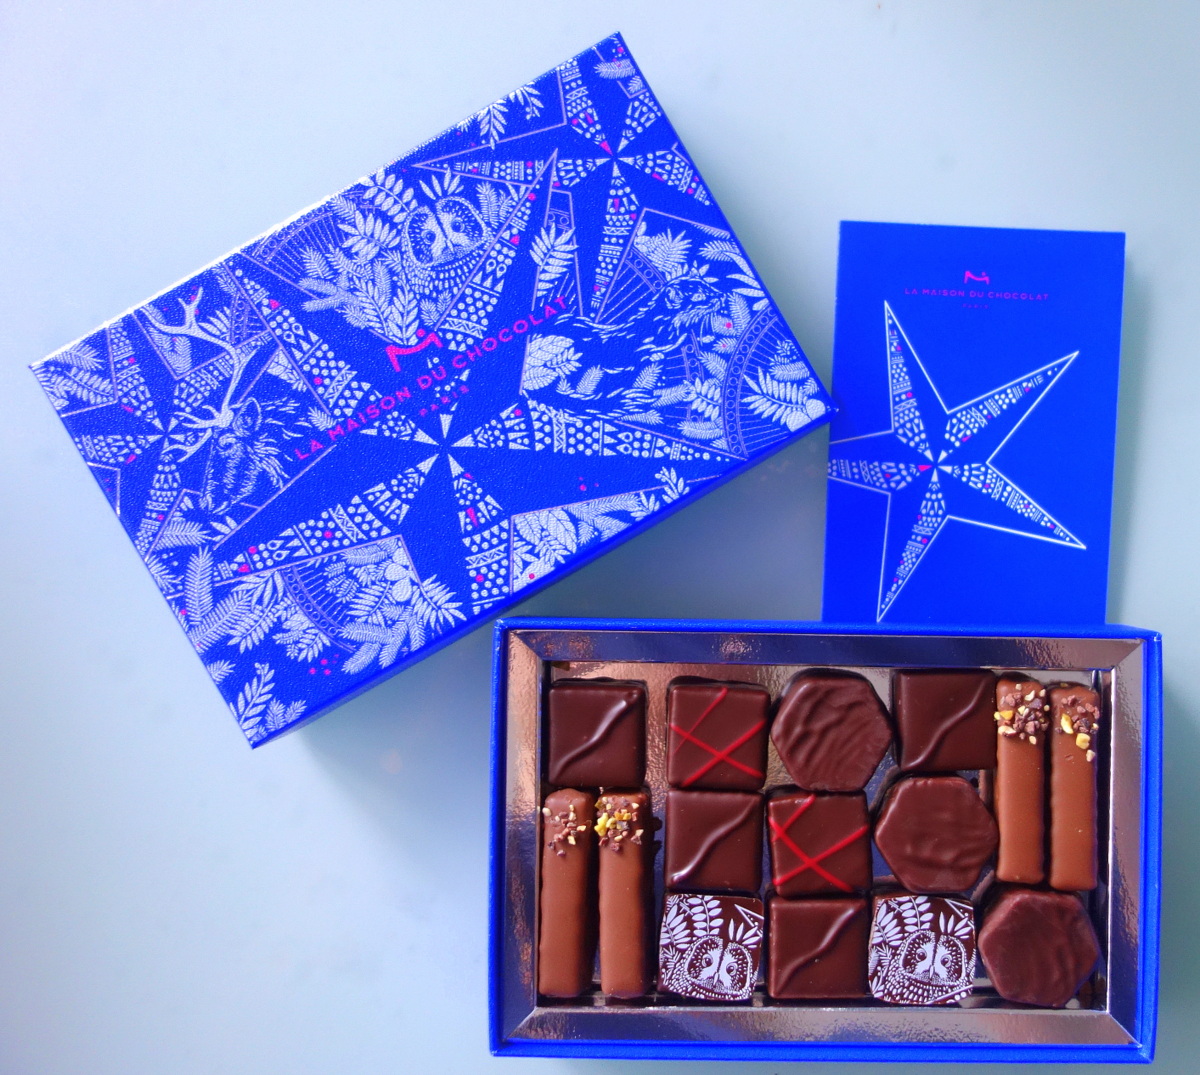 Le coffret collection "Nuit étoilée" de la maison du chocolat